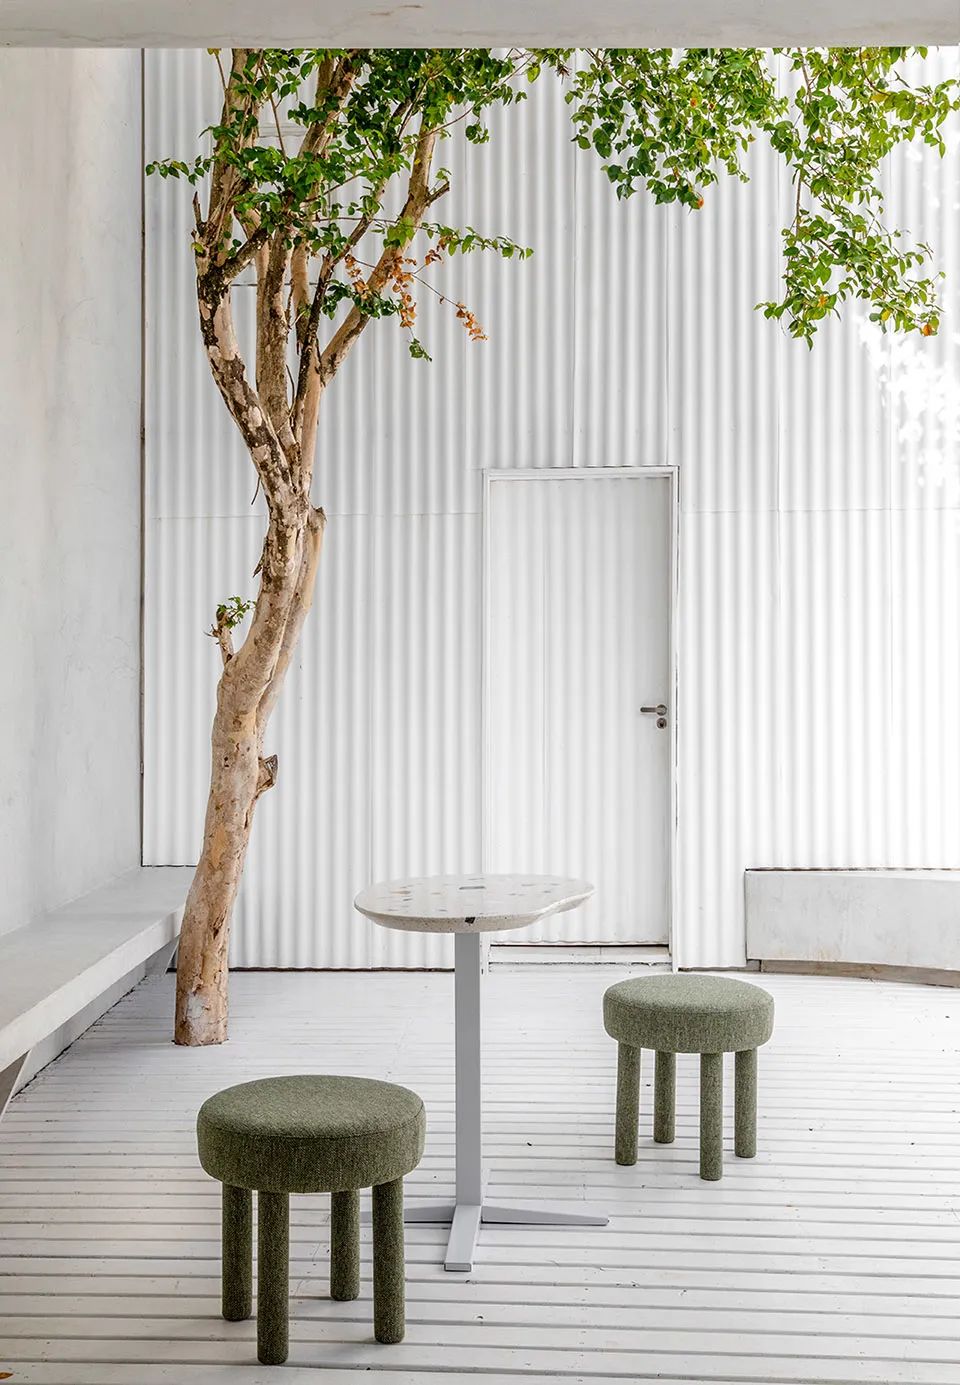 庭院座位區與綠色植栽 巴西抹茶咖啡店室內設計 Brazeil matcharia Green Blood interior design／Studio Guilherme Garcia